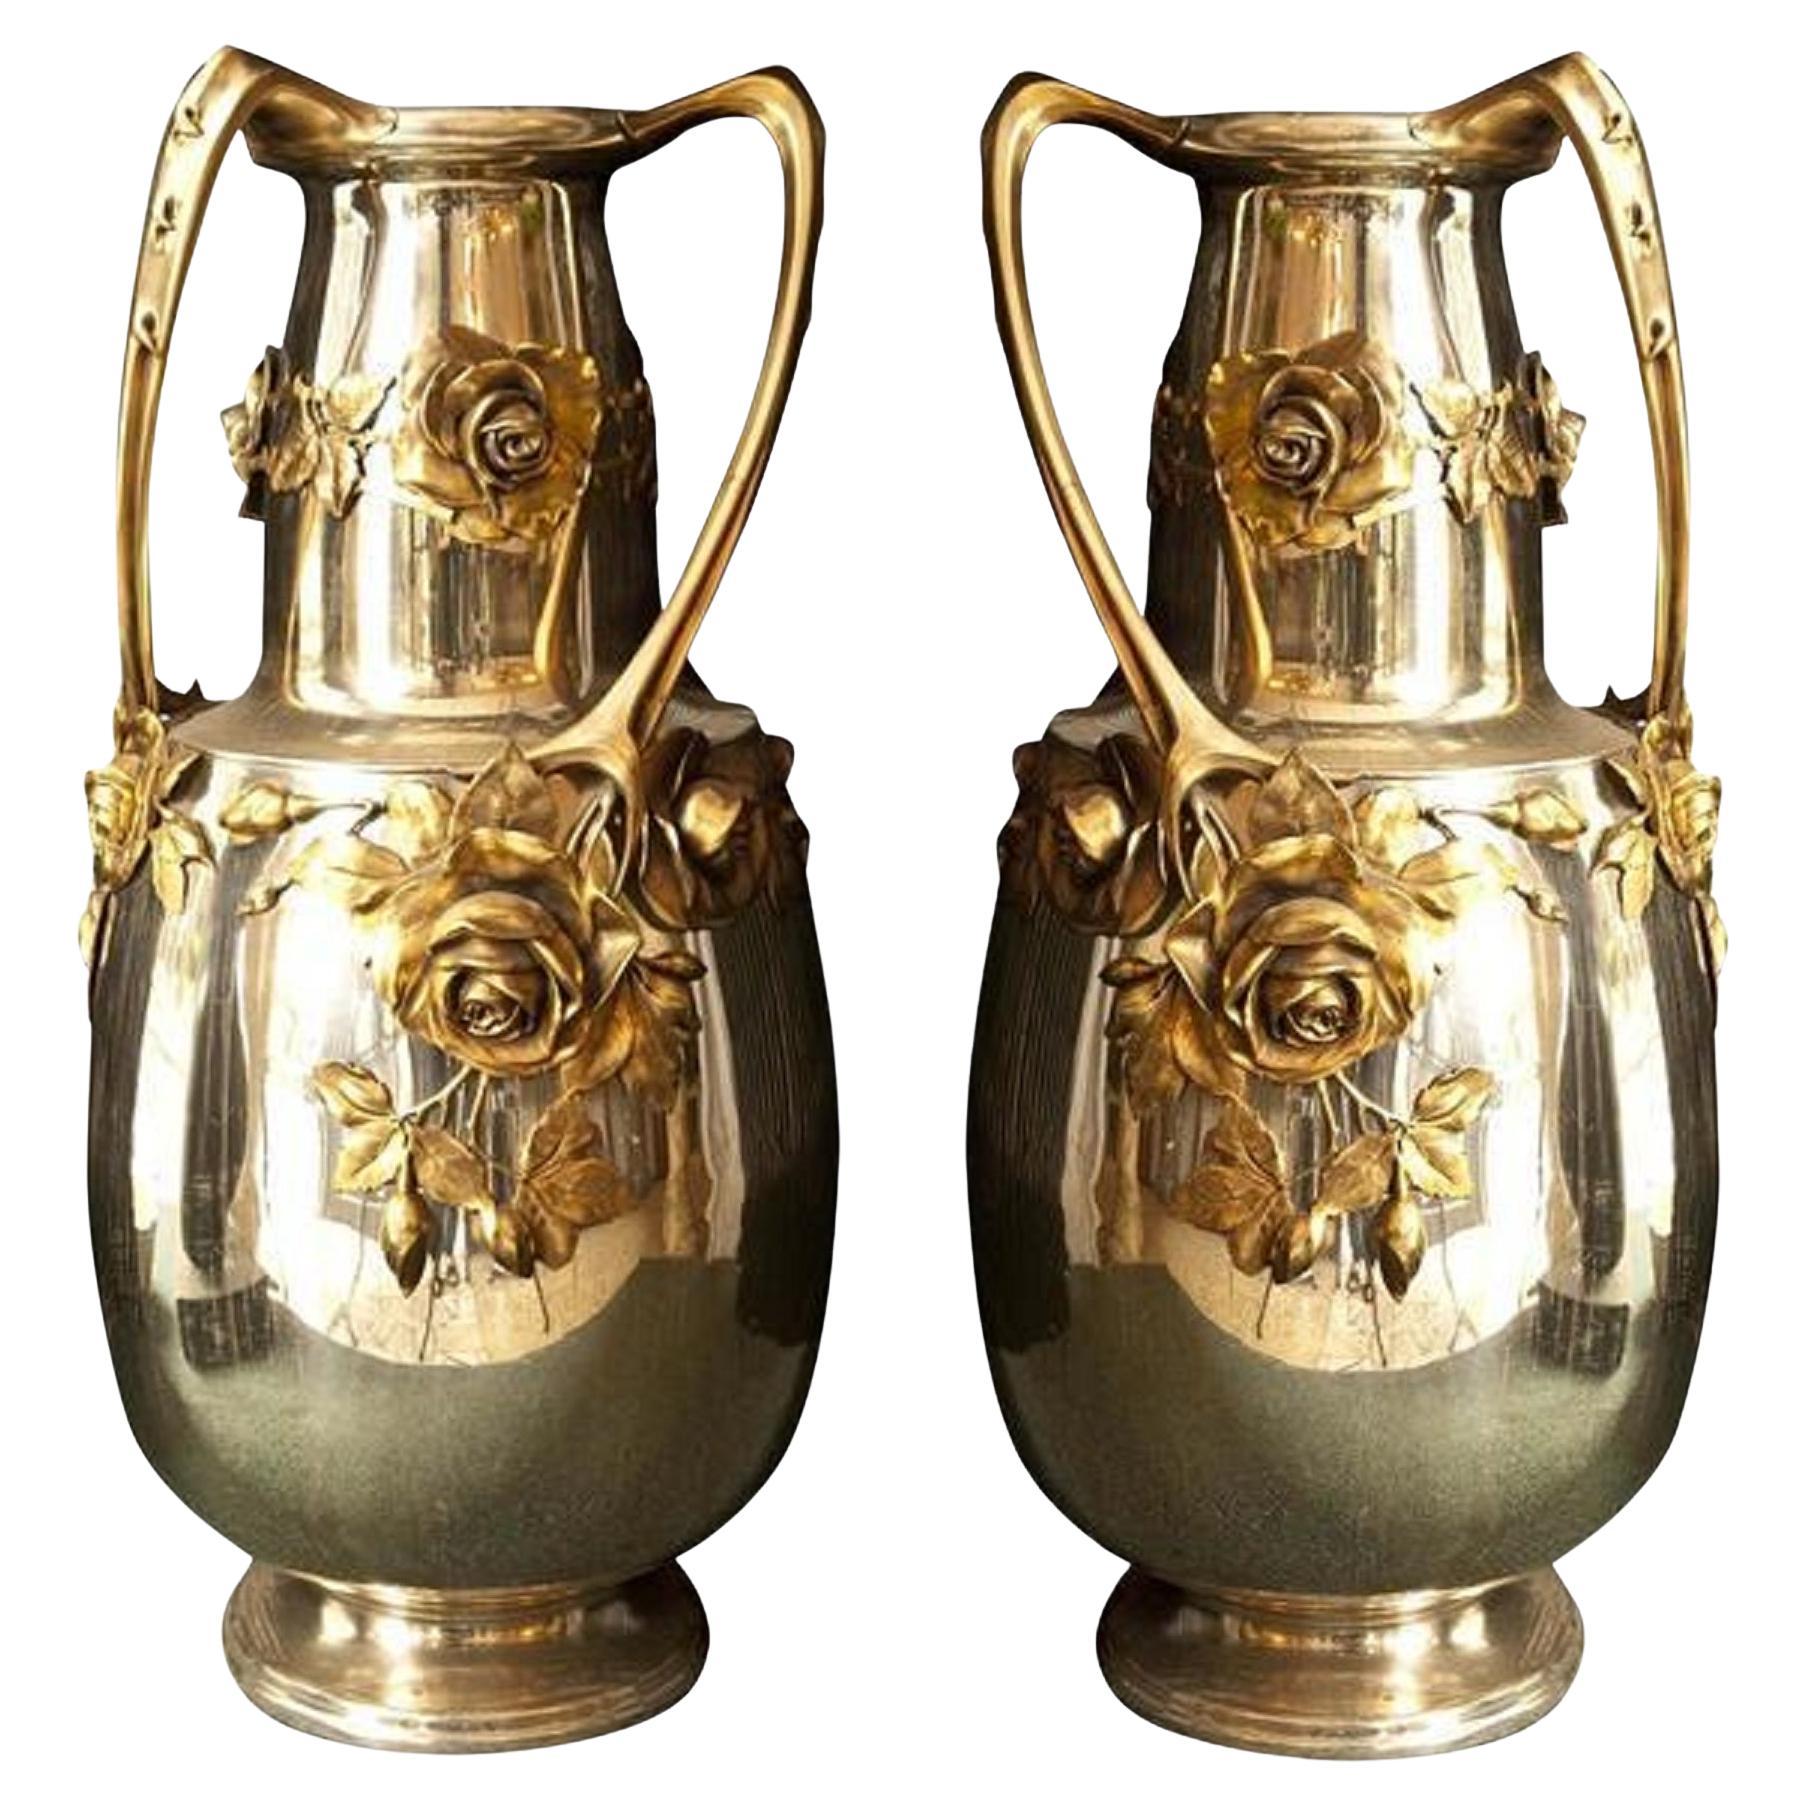 2 Amaizing Vases Kayser, 'German', 1900, Style: Jugendstil, Art Nouveau, Liberty